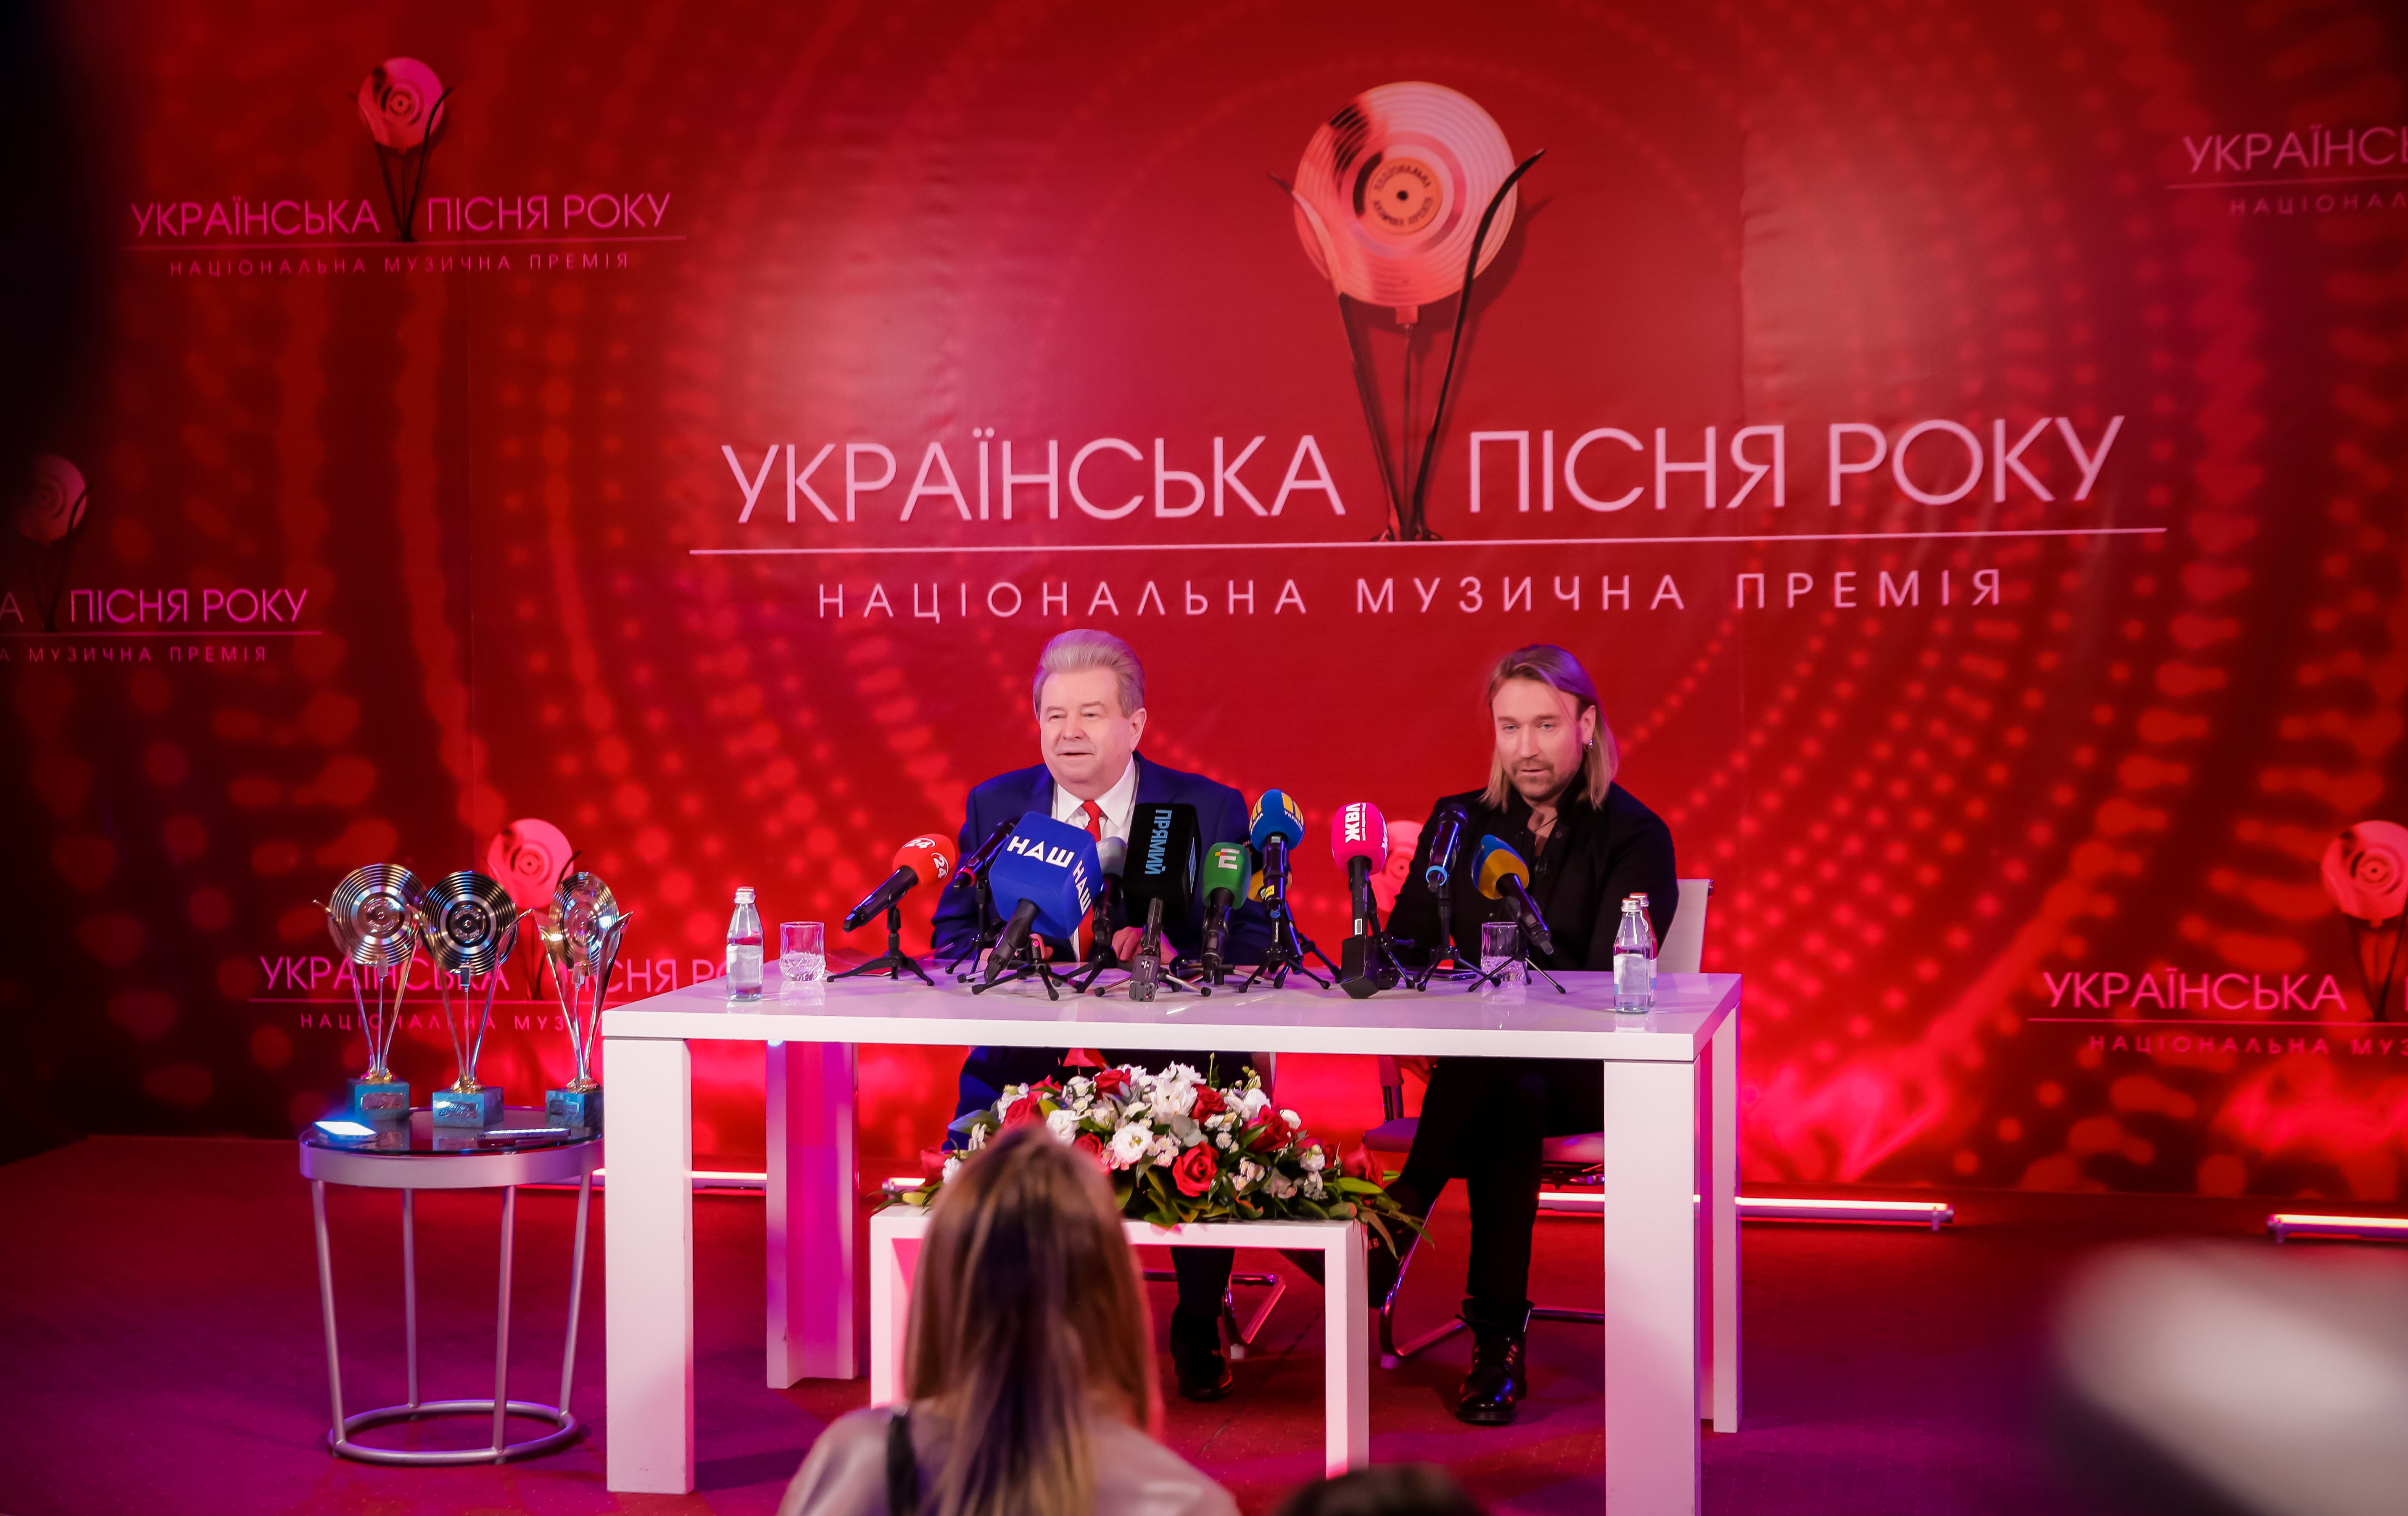  Олег Винник і Михайло Поплавський анонсували музичну премію «Українська пісня року 2020» - фото 3